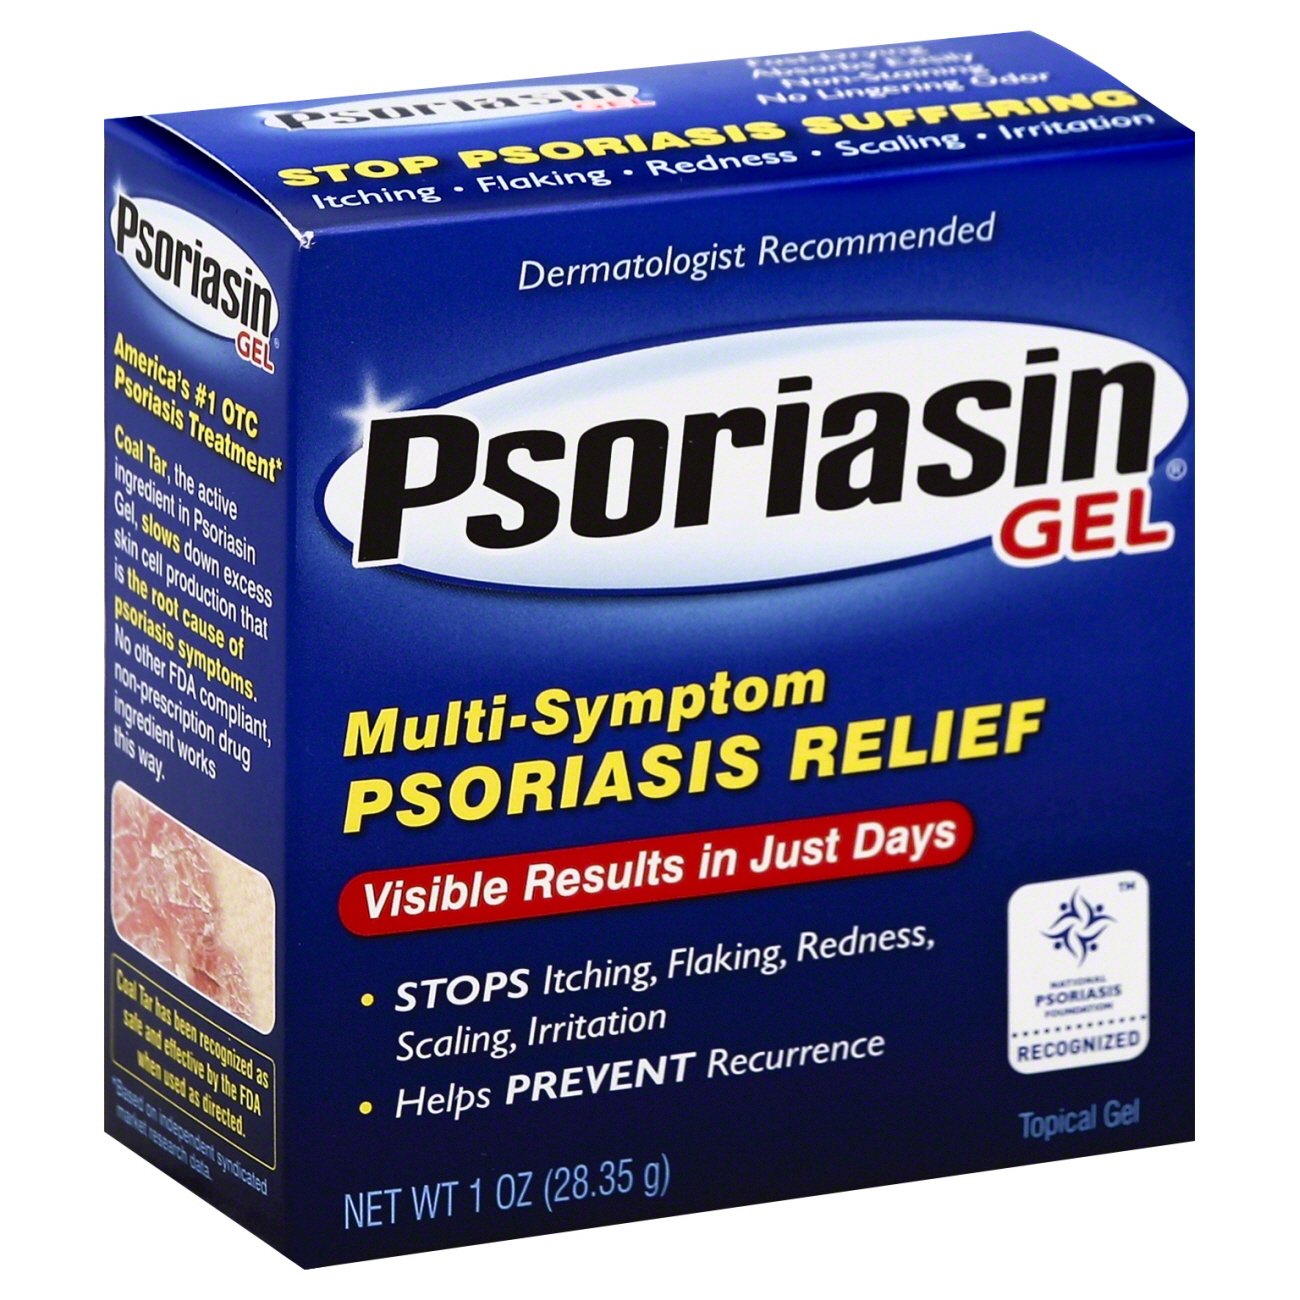 PikkelysĂśmĂśr kezelĂŠse Stop psoriasis gel - Psoriasin ointment intensive moisturizing